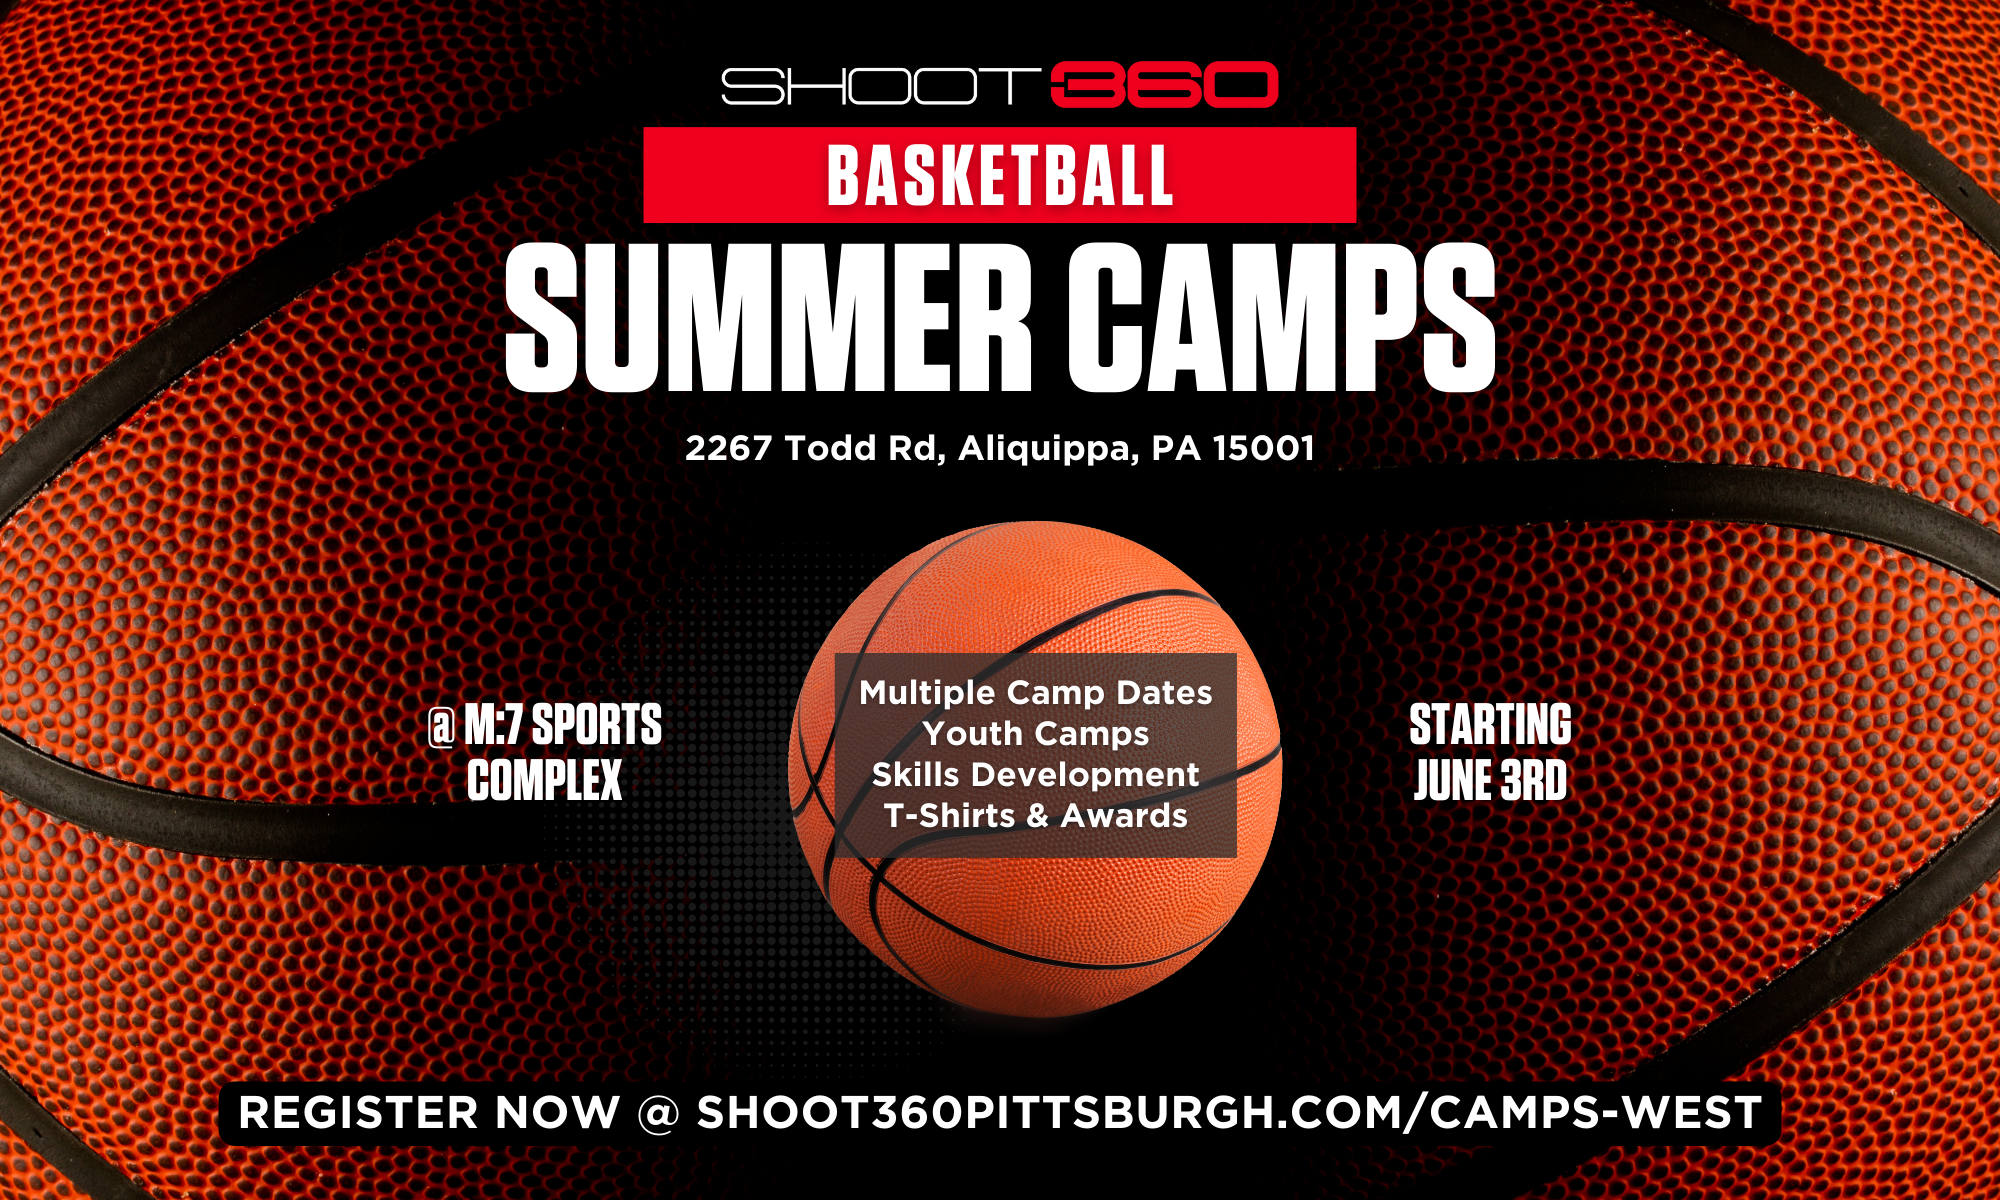 Shoot 360 Basketball Summer Camp